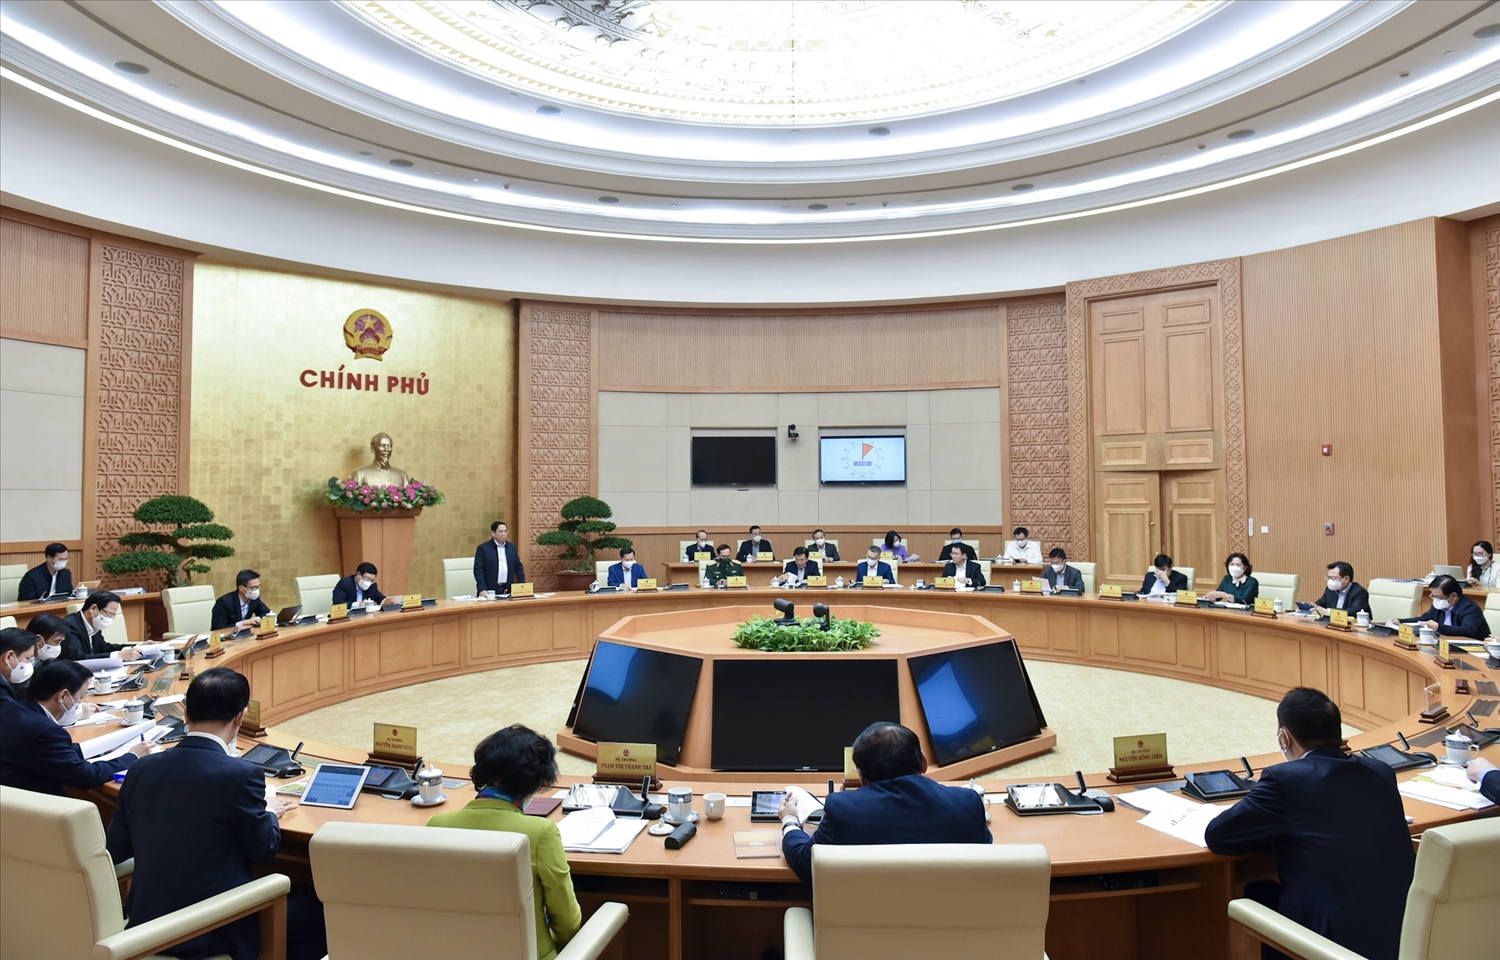 Tại phiên họp lần này, Chính phủ tập trung thảo luận về tình hình kinh tế-xã hội, đặc biệt là về công tác phòng chống dịch và phục hồi, phát triển kinh tế, các nhiệm vụ, giải pháp trong tháng 12/2021... Ảnh: VGP/Nhật Bắc